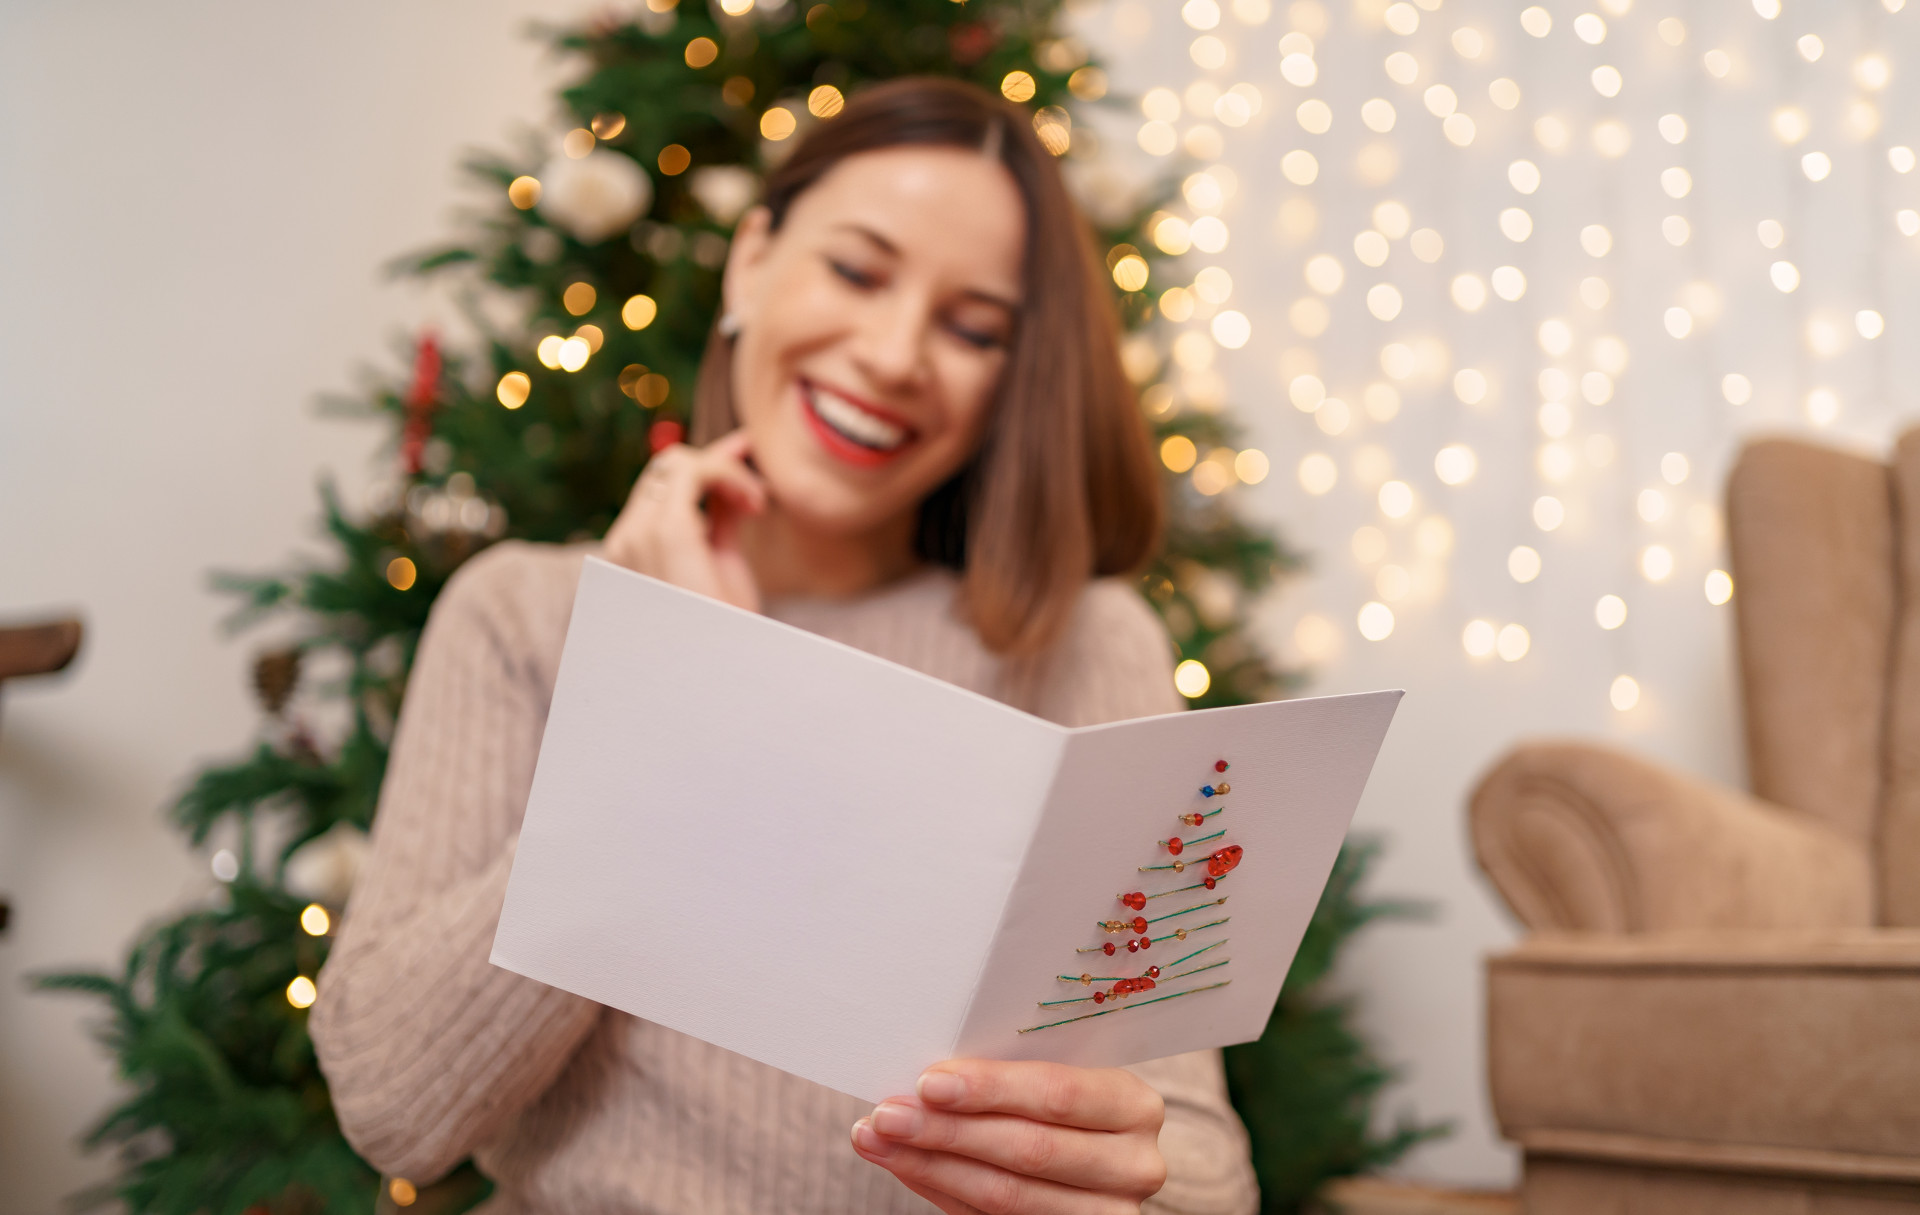 Frau liest Weihnachtskarte und lächelt dabei, hinter ihr ein Weihnachtsbaum und Lichterglanz